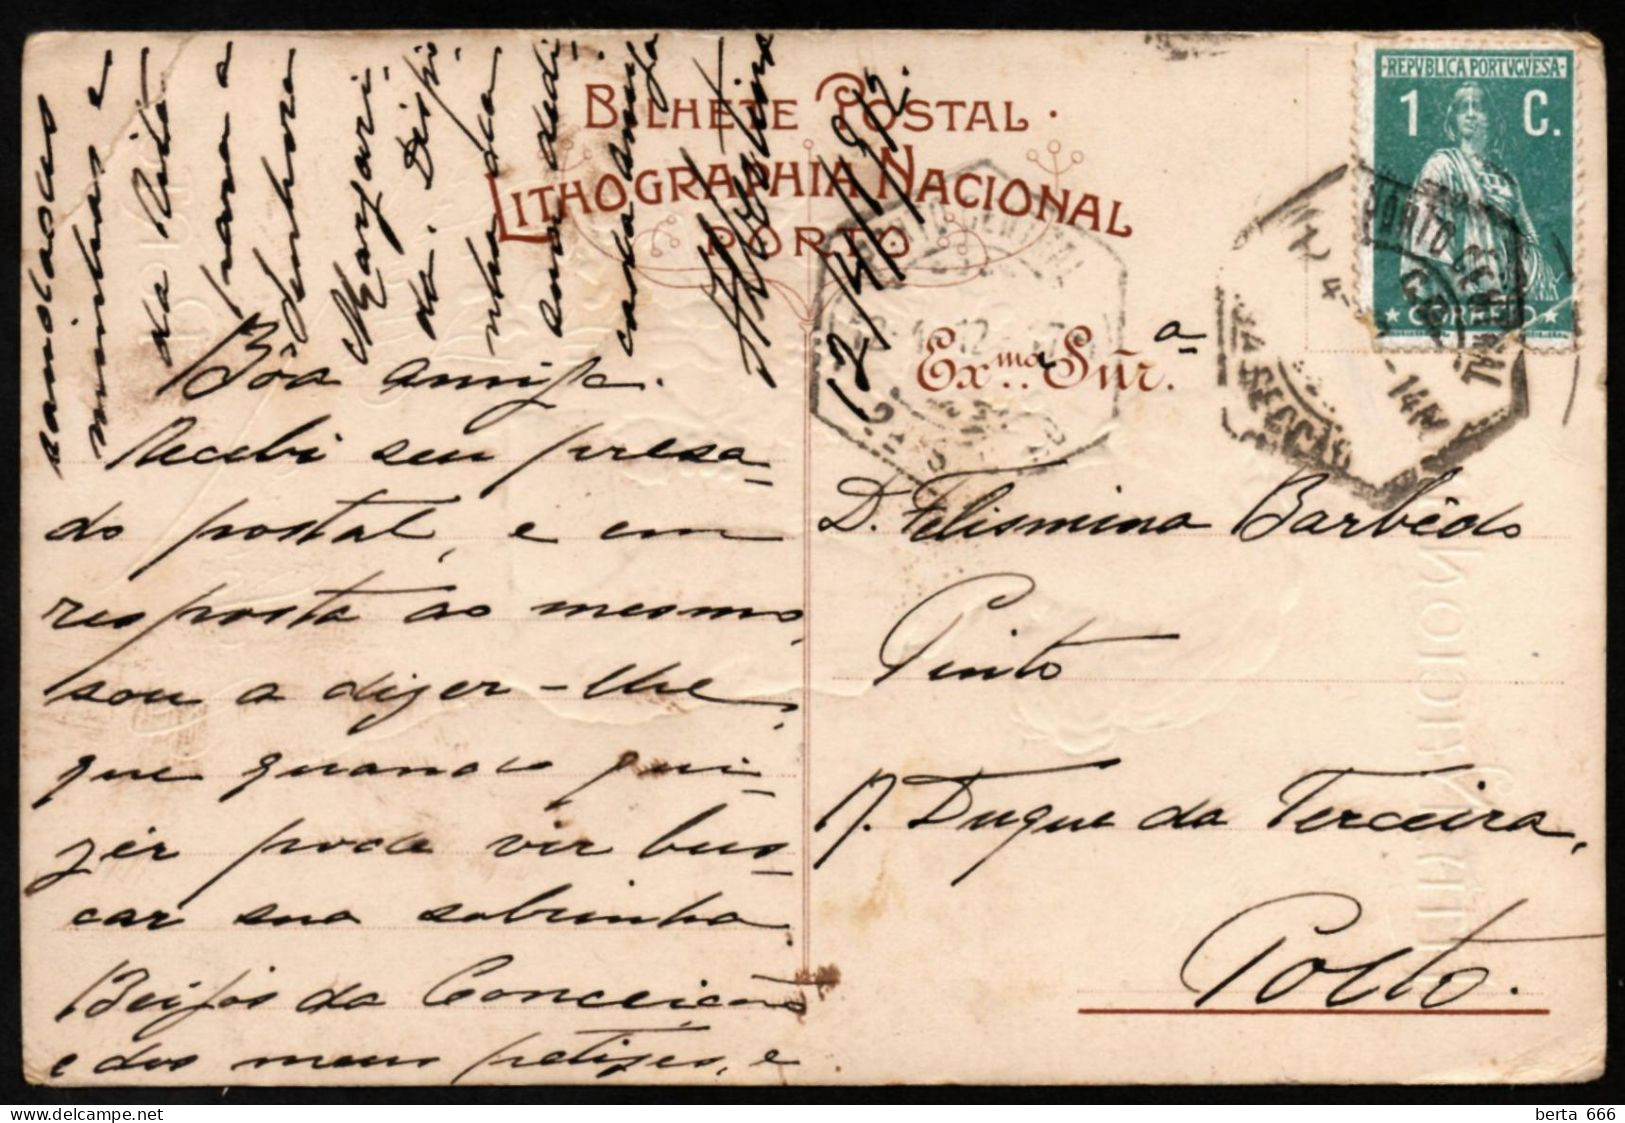 Bilhete Postal Publicitário Com Relevo * Litografia Nacional * Porto * Circulado 1912 - Porto